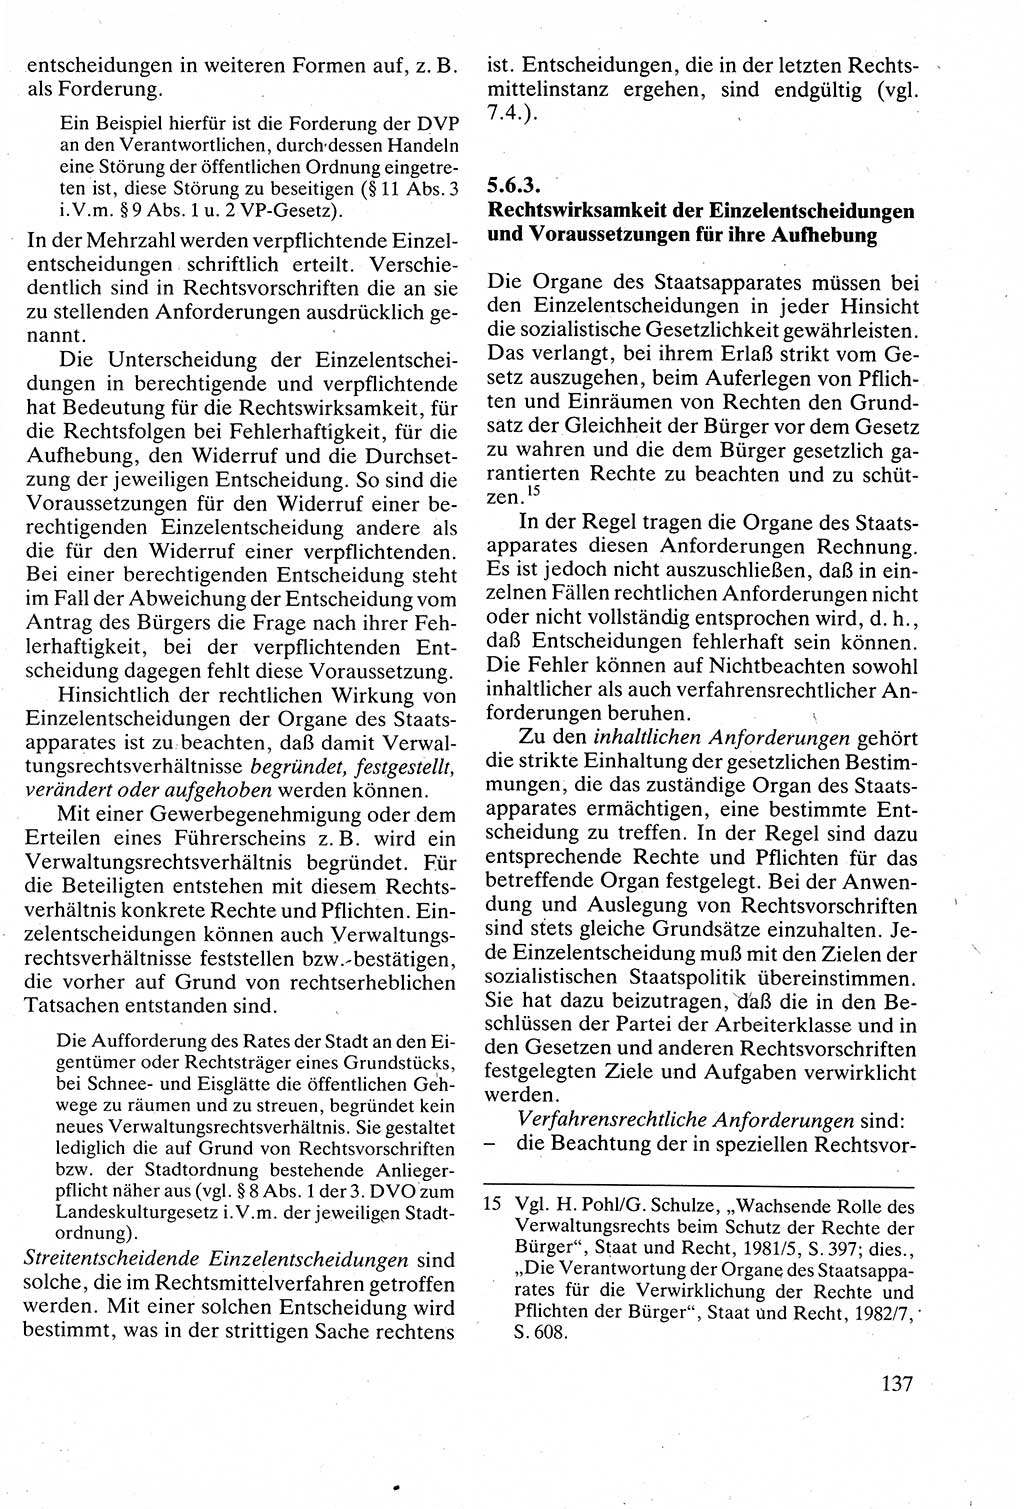 Verwaltungsrecht [Deutsche Demokratische Republik (DDR)], Lehrbuch 1988, Seite 137 (Verw.-R. DDR Lb. 1988, S. 137)